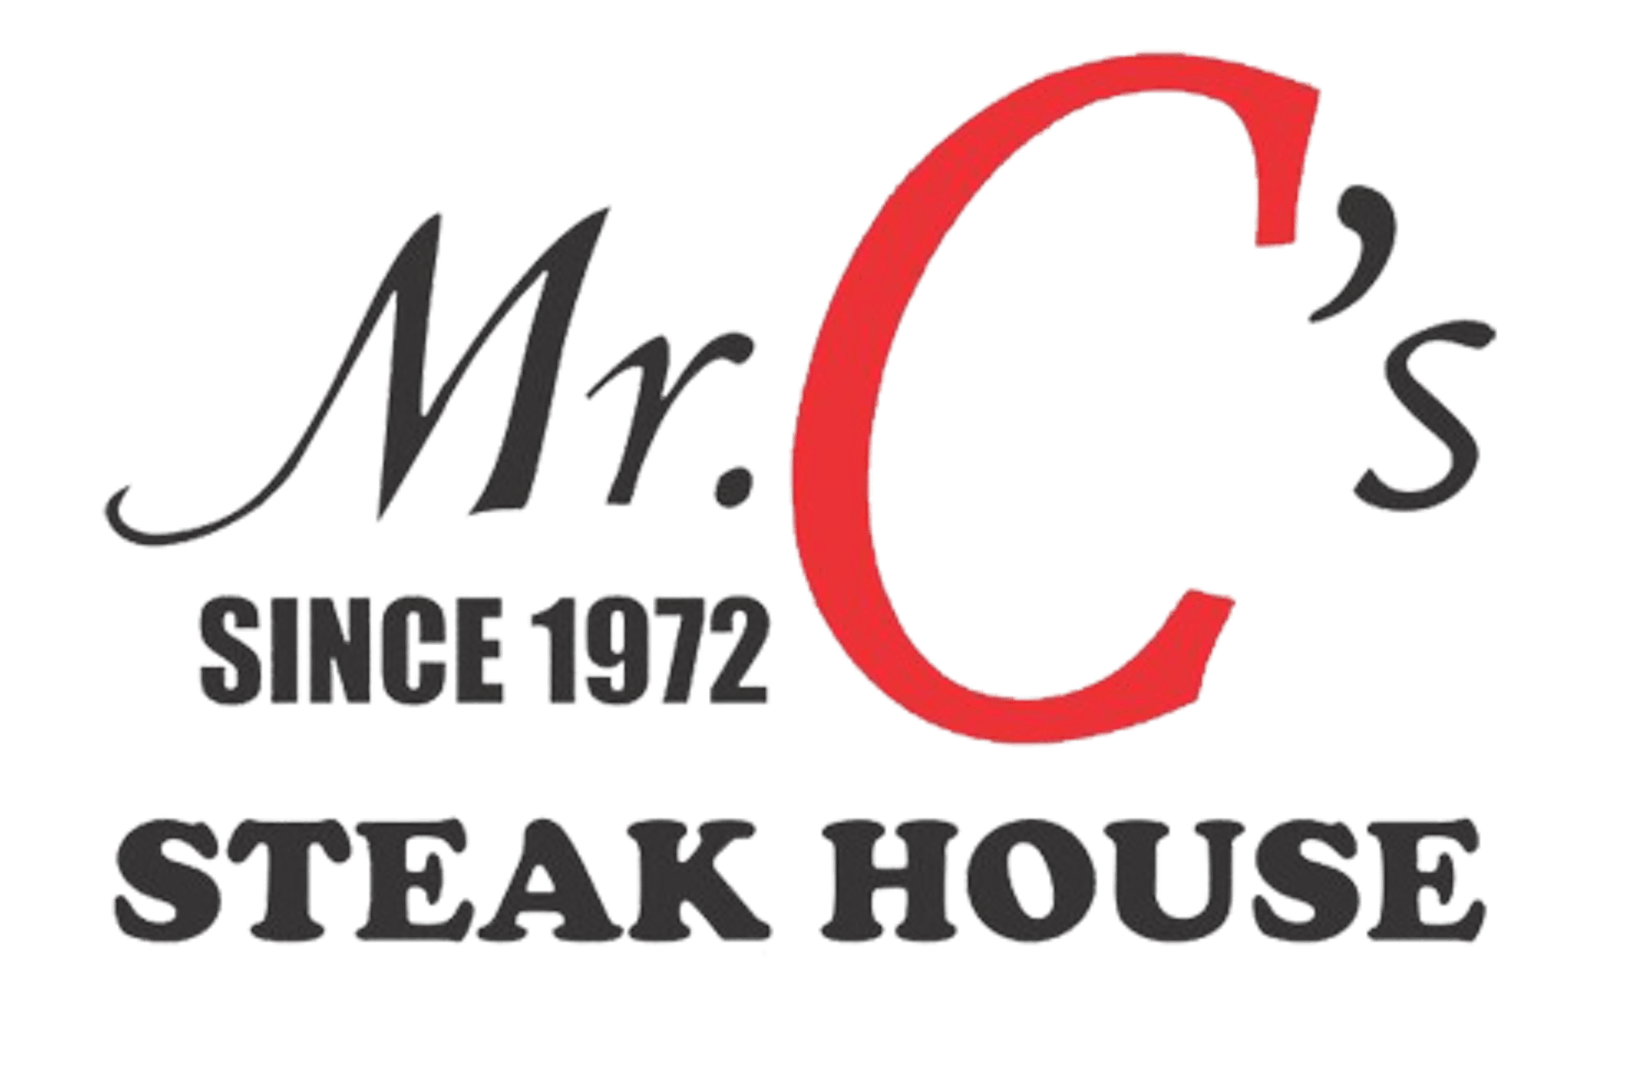 Mr. C's Steakhouse